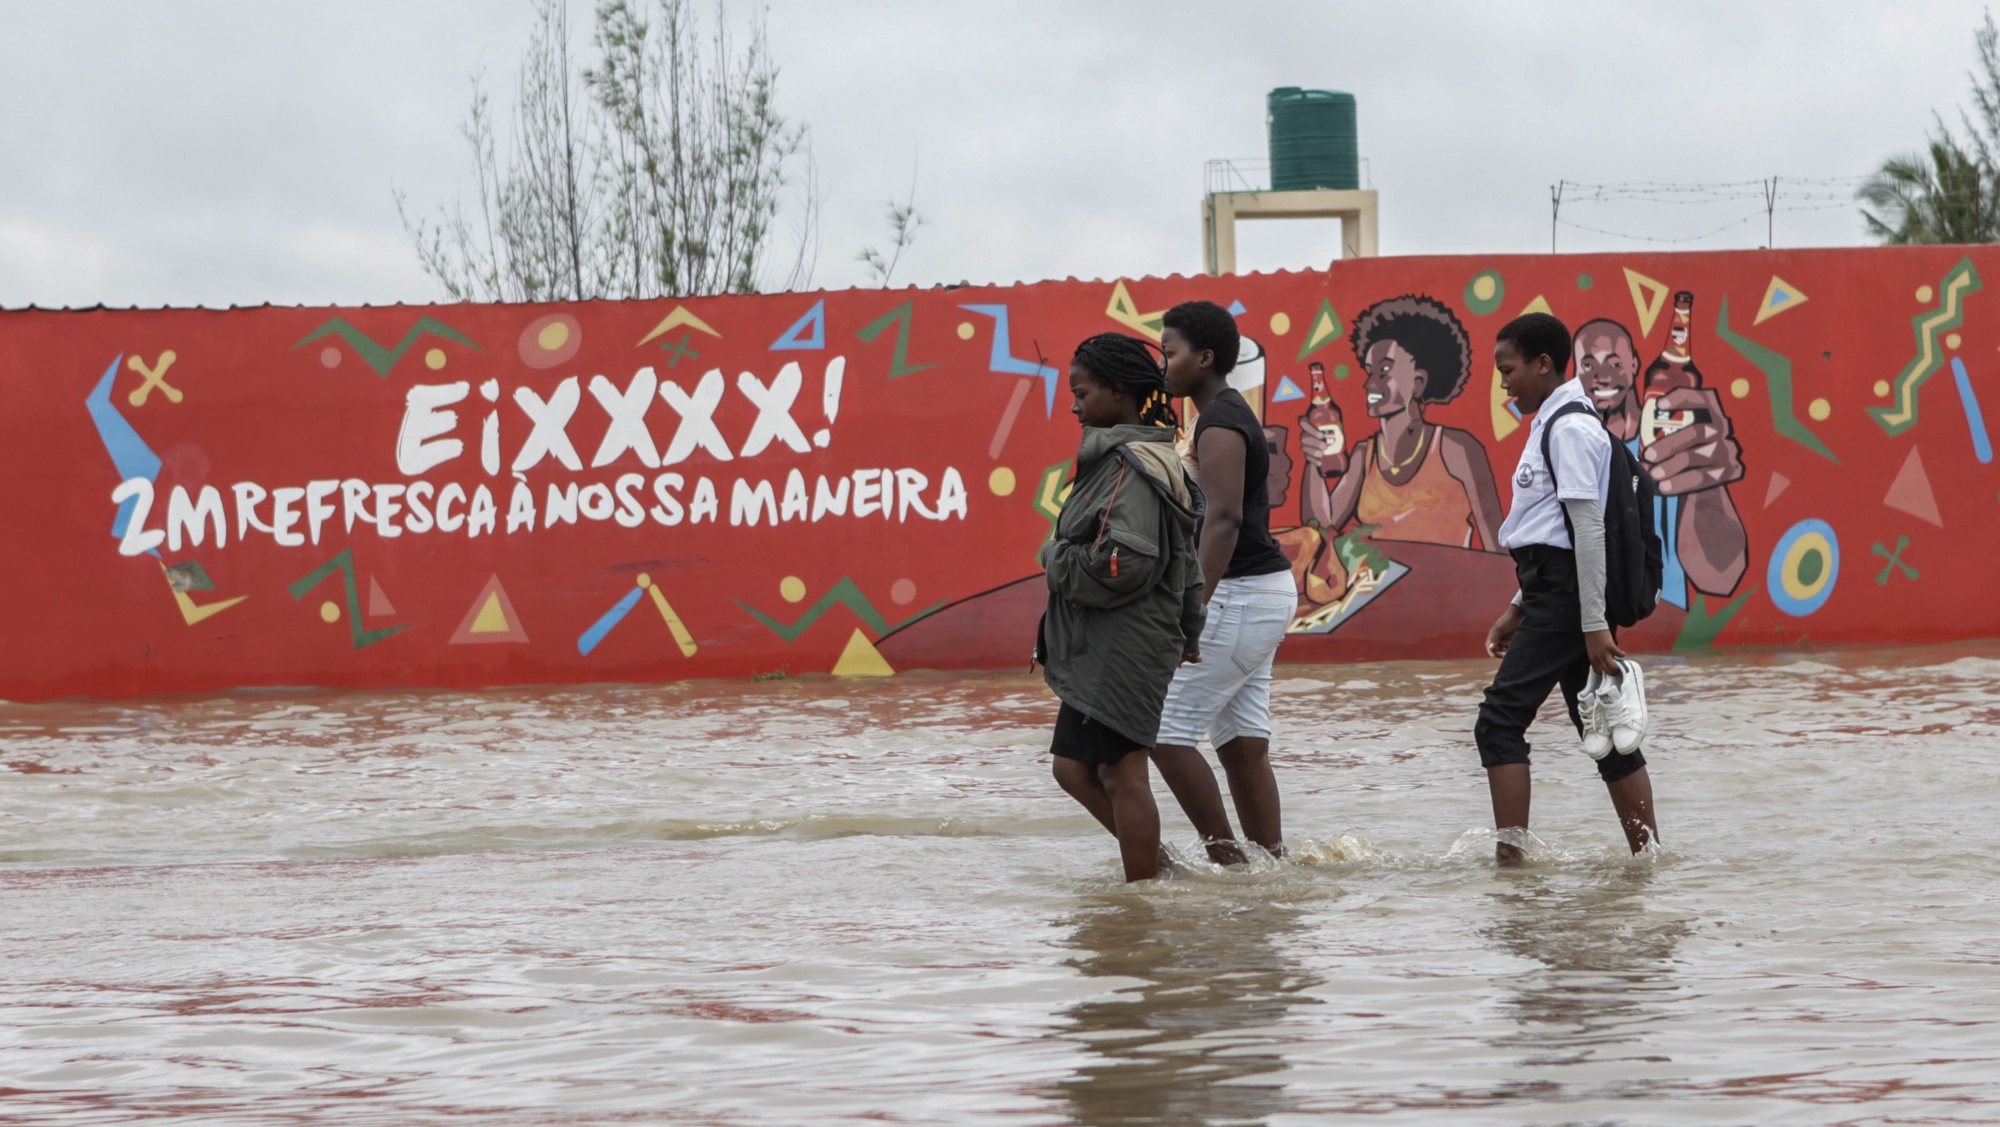 Populares passam por uma área inundada após chuvas desde 07 de Fevereiro em Maputo, Moçambique, 10 de fevereiro de 2023. A chuva intensa que cai na região de Maputo desde quarta-feira já afetou cerca de 14.000 pessoas e desalojou 180 famílias, de acordo com um balanço oficial divulgado hoje pelas autoridades, que mantêm em quatro o número de óbitos. LUÍSA NHANTUMBO/LUSA